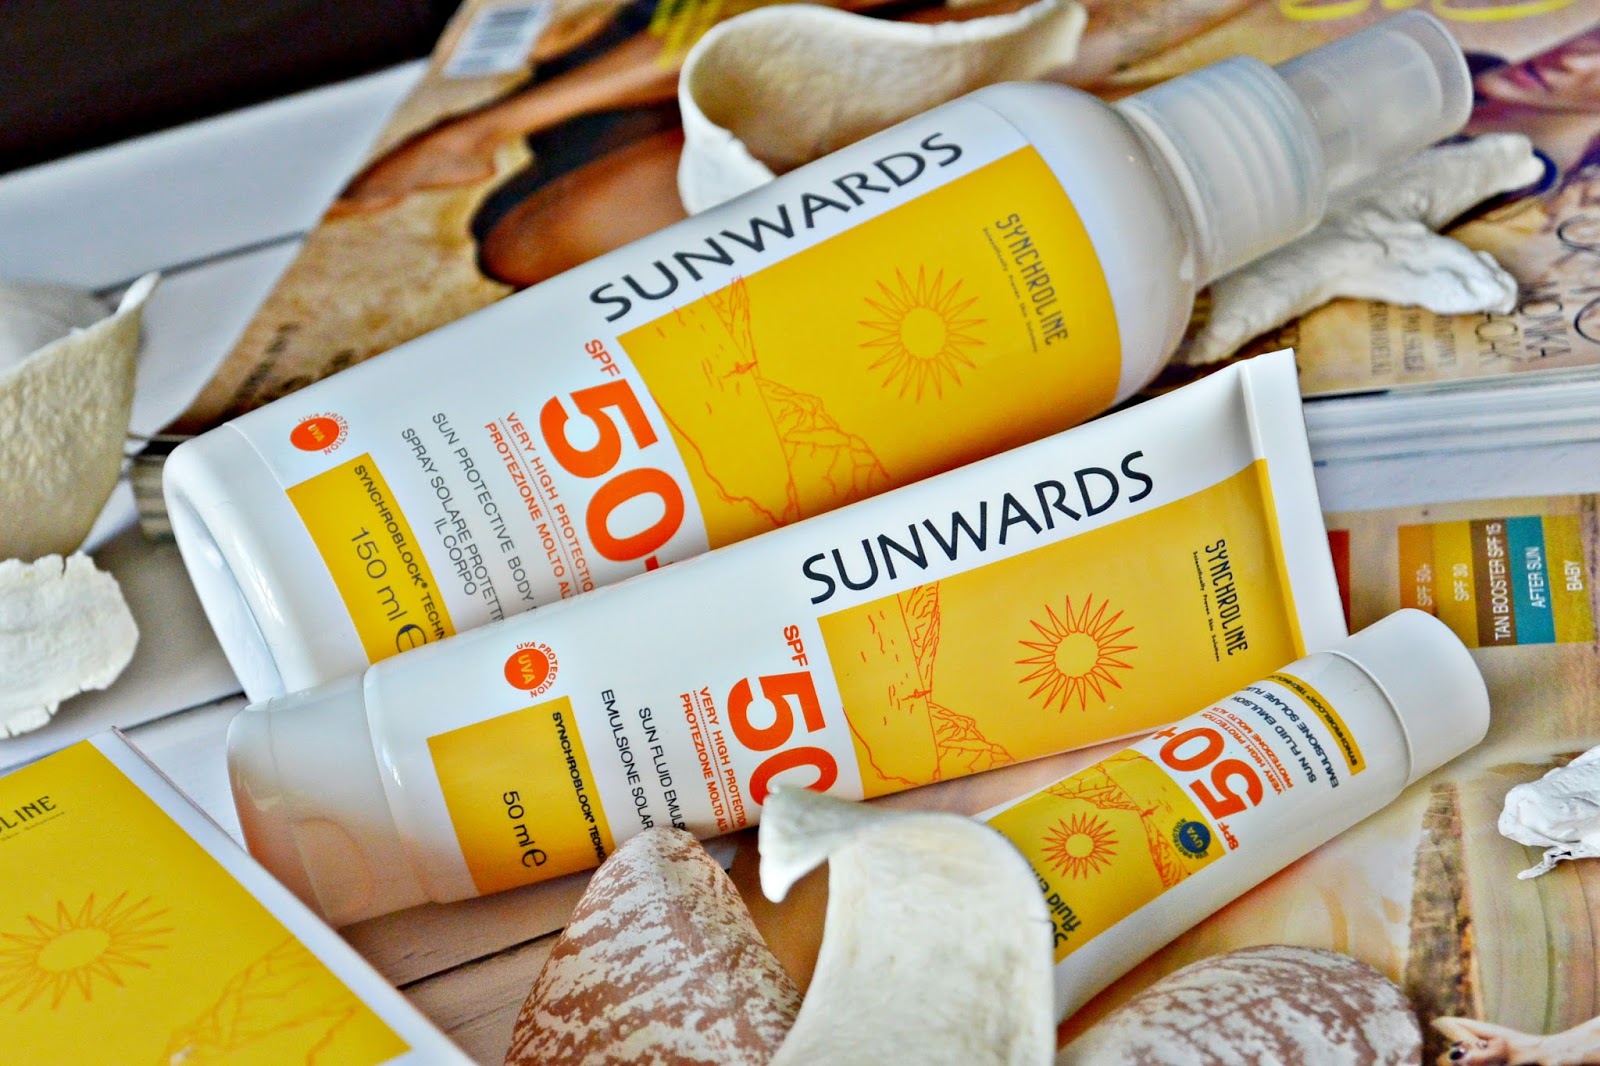 SUNWARDS Synchroline w trosce o ochronę skóry przed promieniowaniem UV